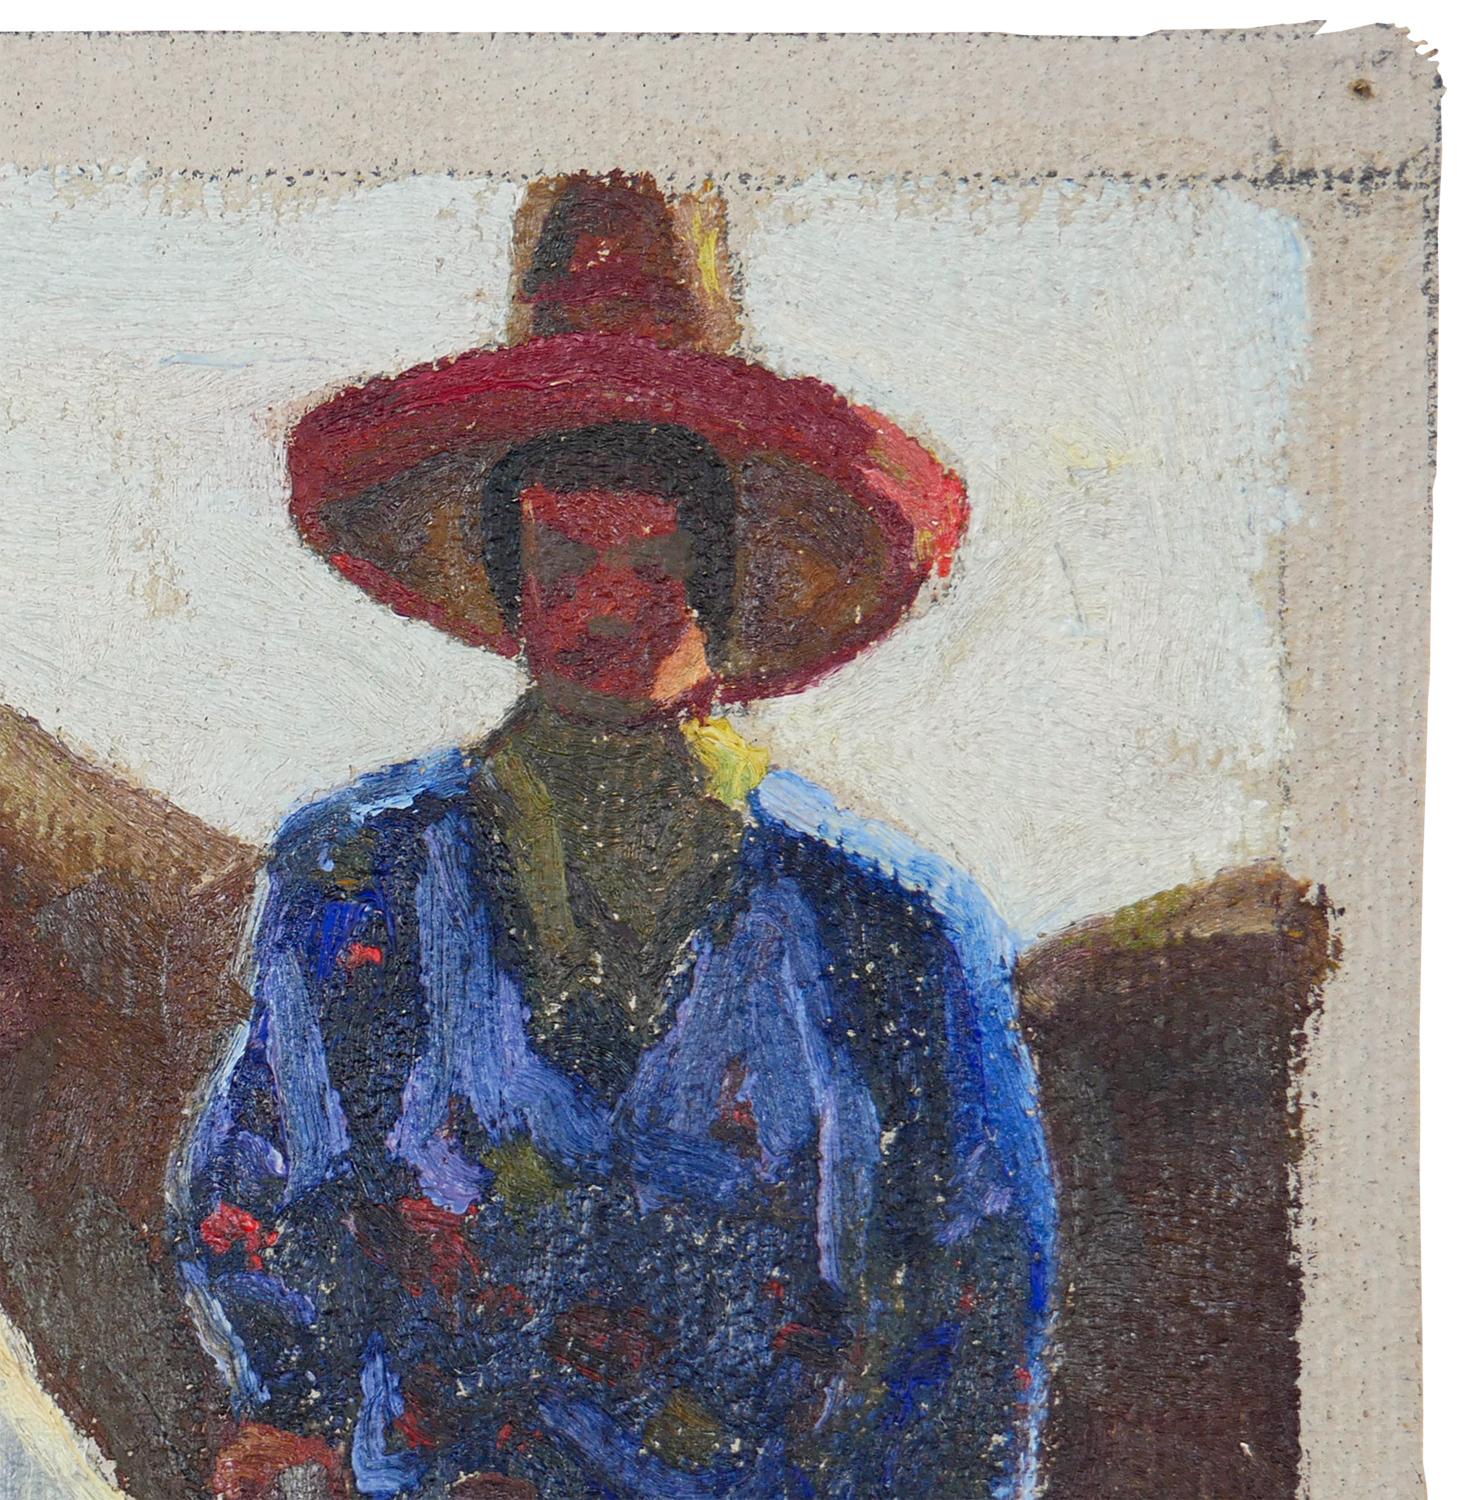 Blaues, rotes und braunes abstraktes impressionistisches Gemälde des texanischen Künstlers Fred Darge. Das Gemälde zeigt einen Cowboy mit blauem Hemd und rotem Hut, der auf einem braunen Reitpferd sitzt. Signiert vom Künstler in der rechten unteren